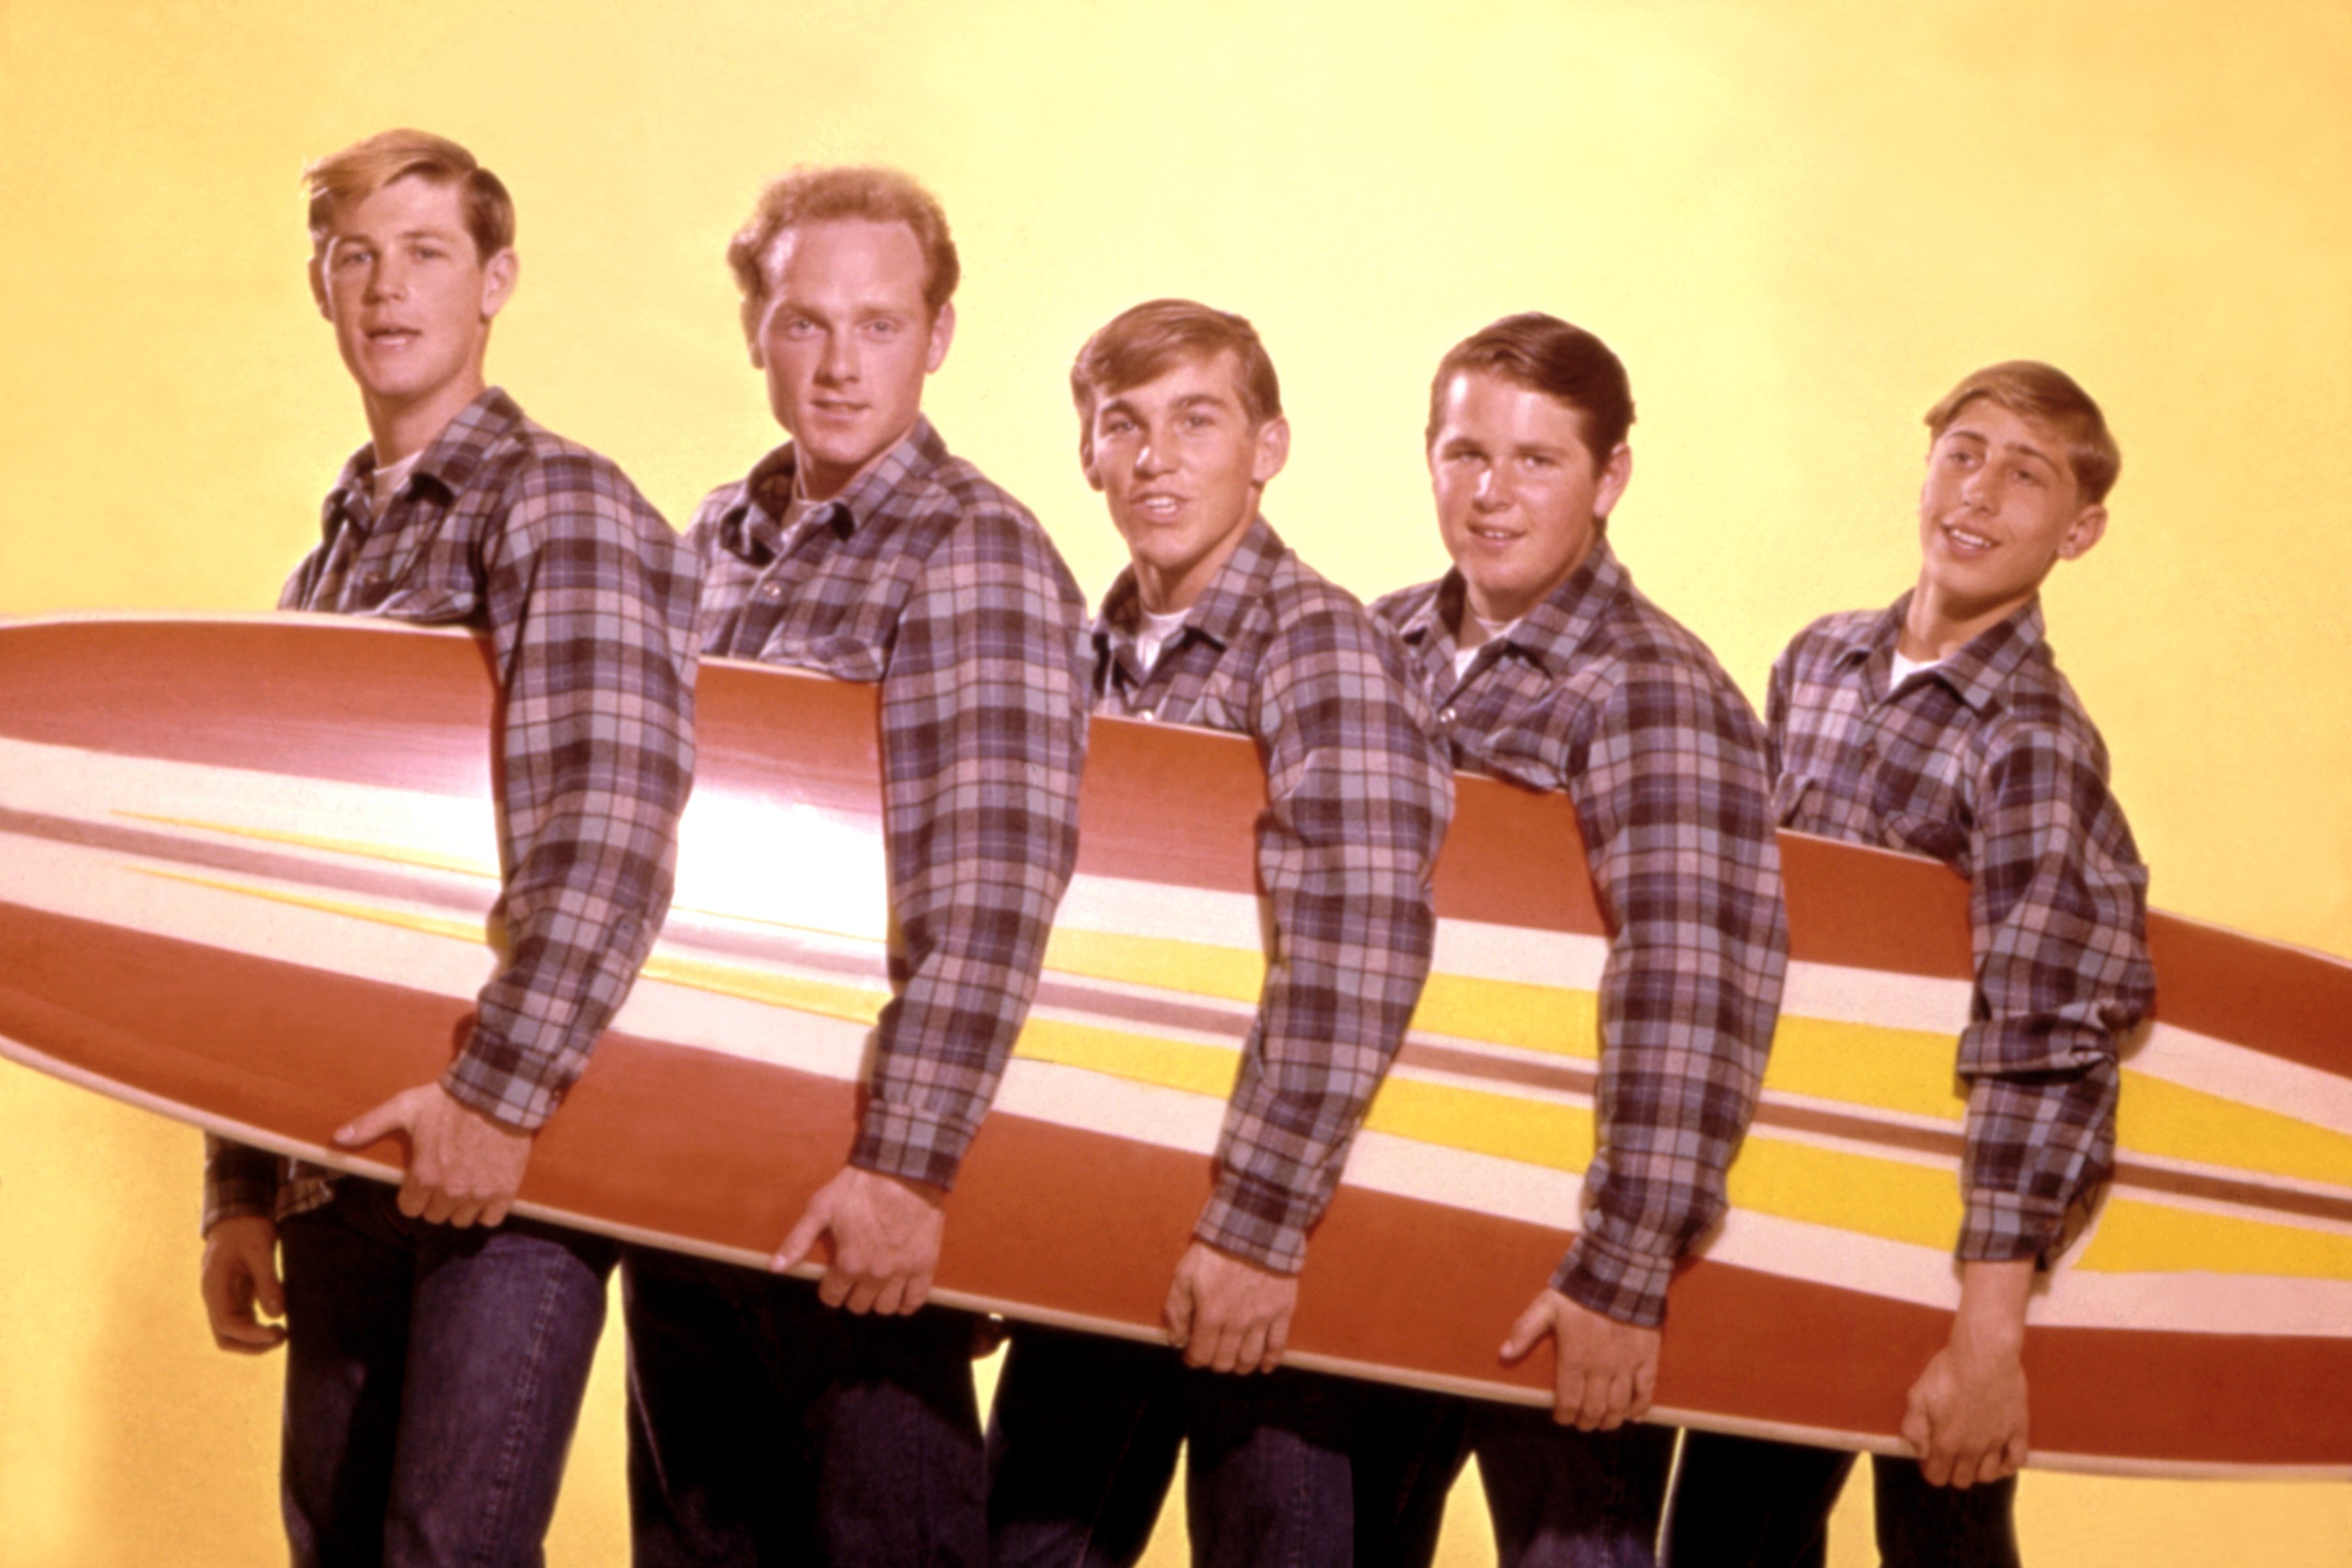 The Beach Boys with a surf board